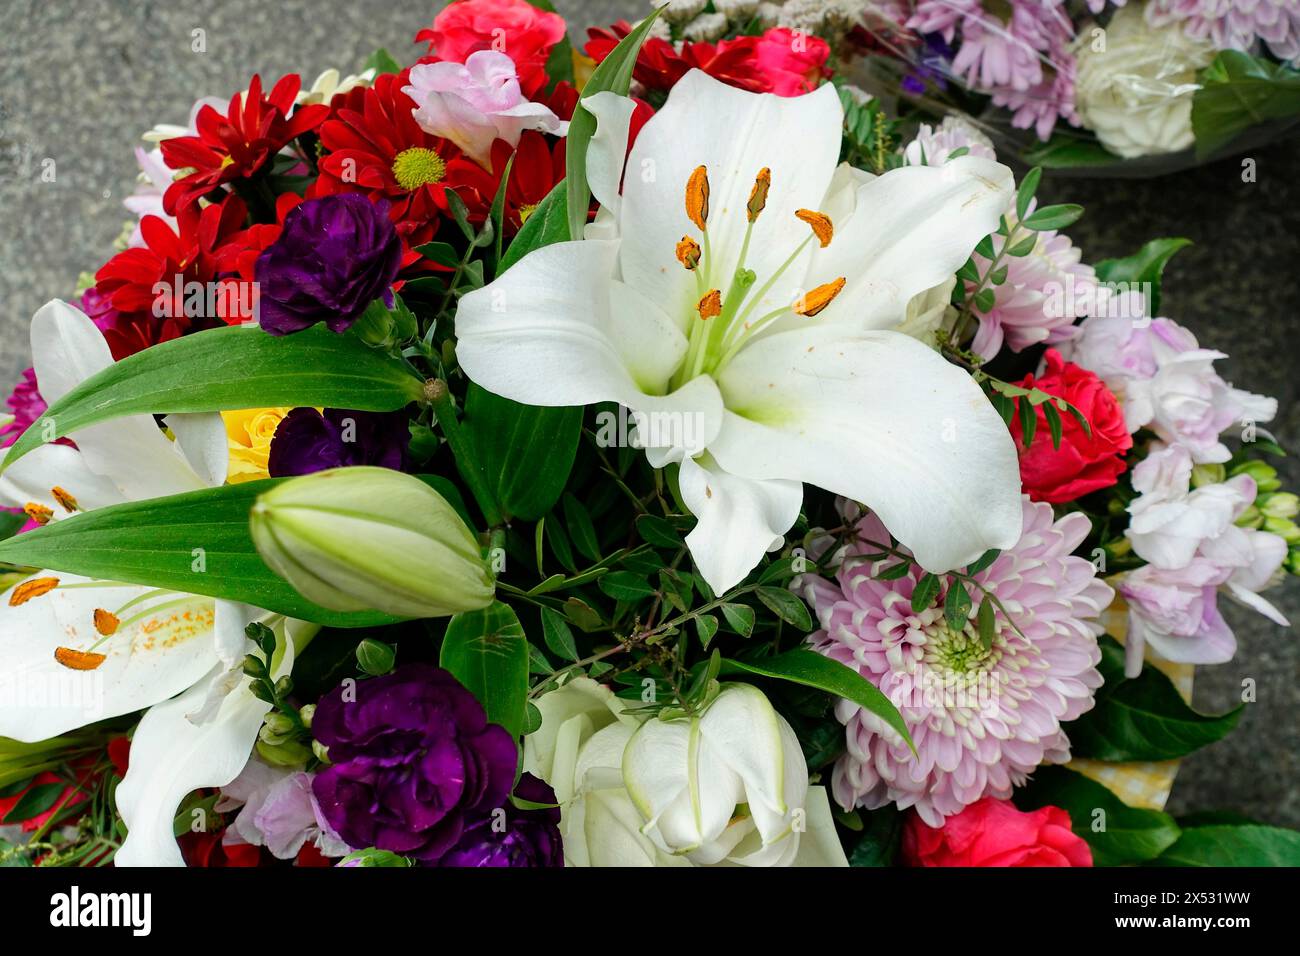 Colorata composizione floreale con giglio bianco (Lilium candidum) e accenti viola, vendita fiori, stazione centrale, Amburgo, città anseatica di Amburgo Foto Stock